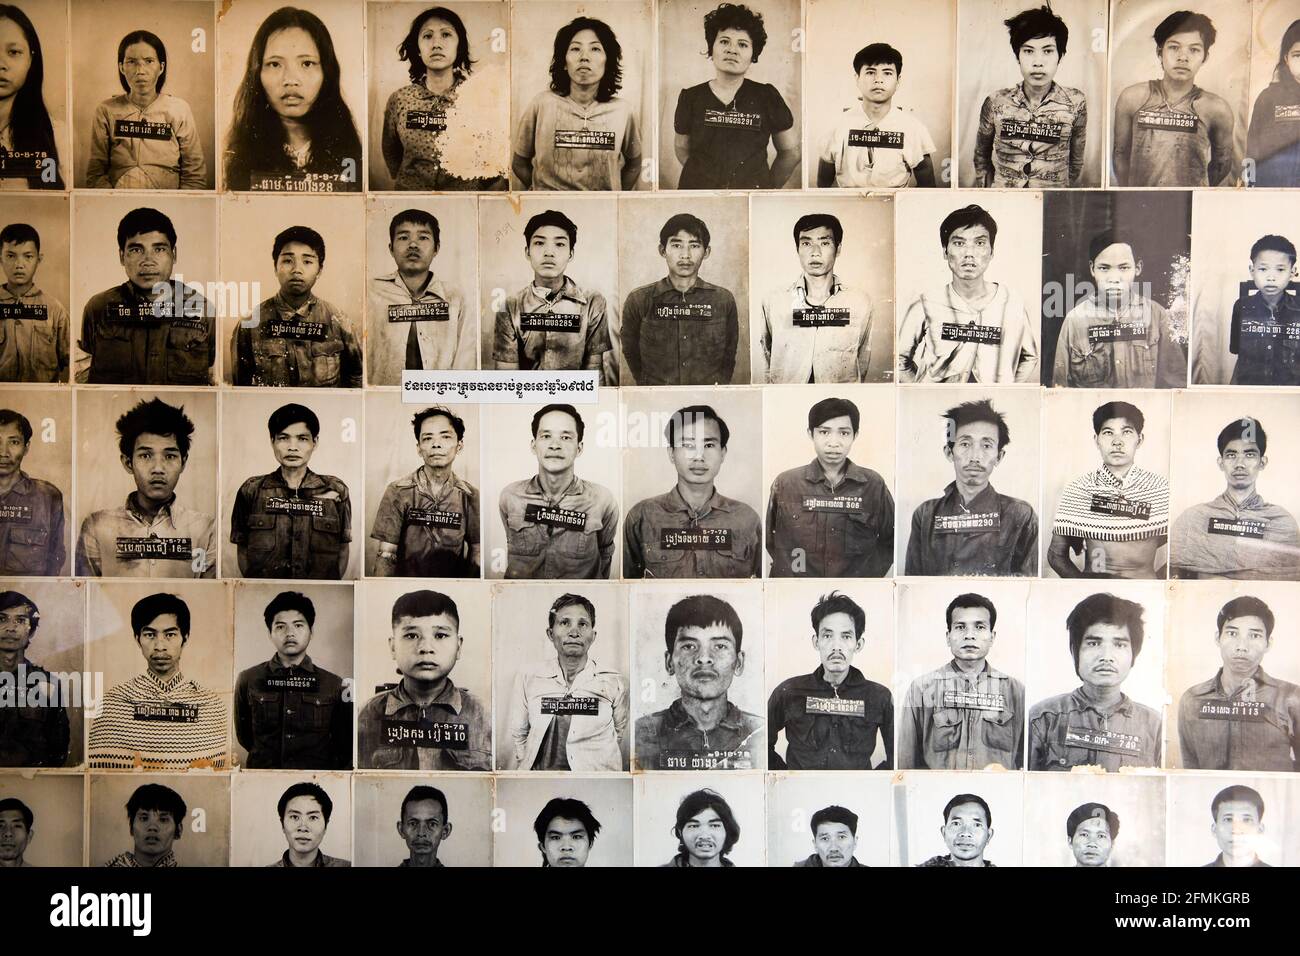 Fotos der Gefangenen im S21-Foltergefängnis in Phnom Penh Kambodscha Stockfoto